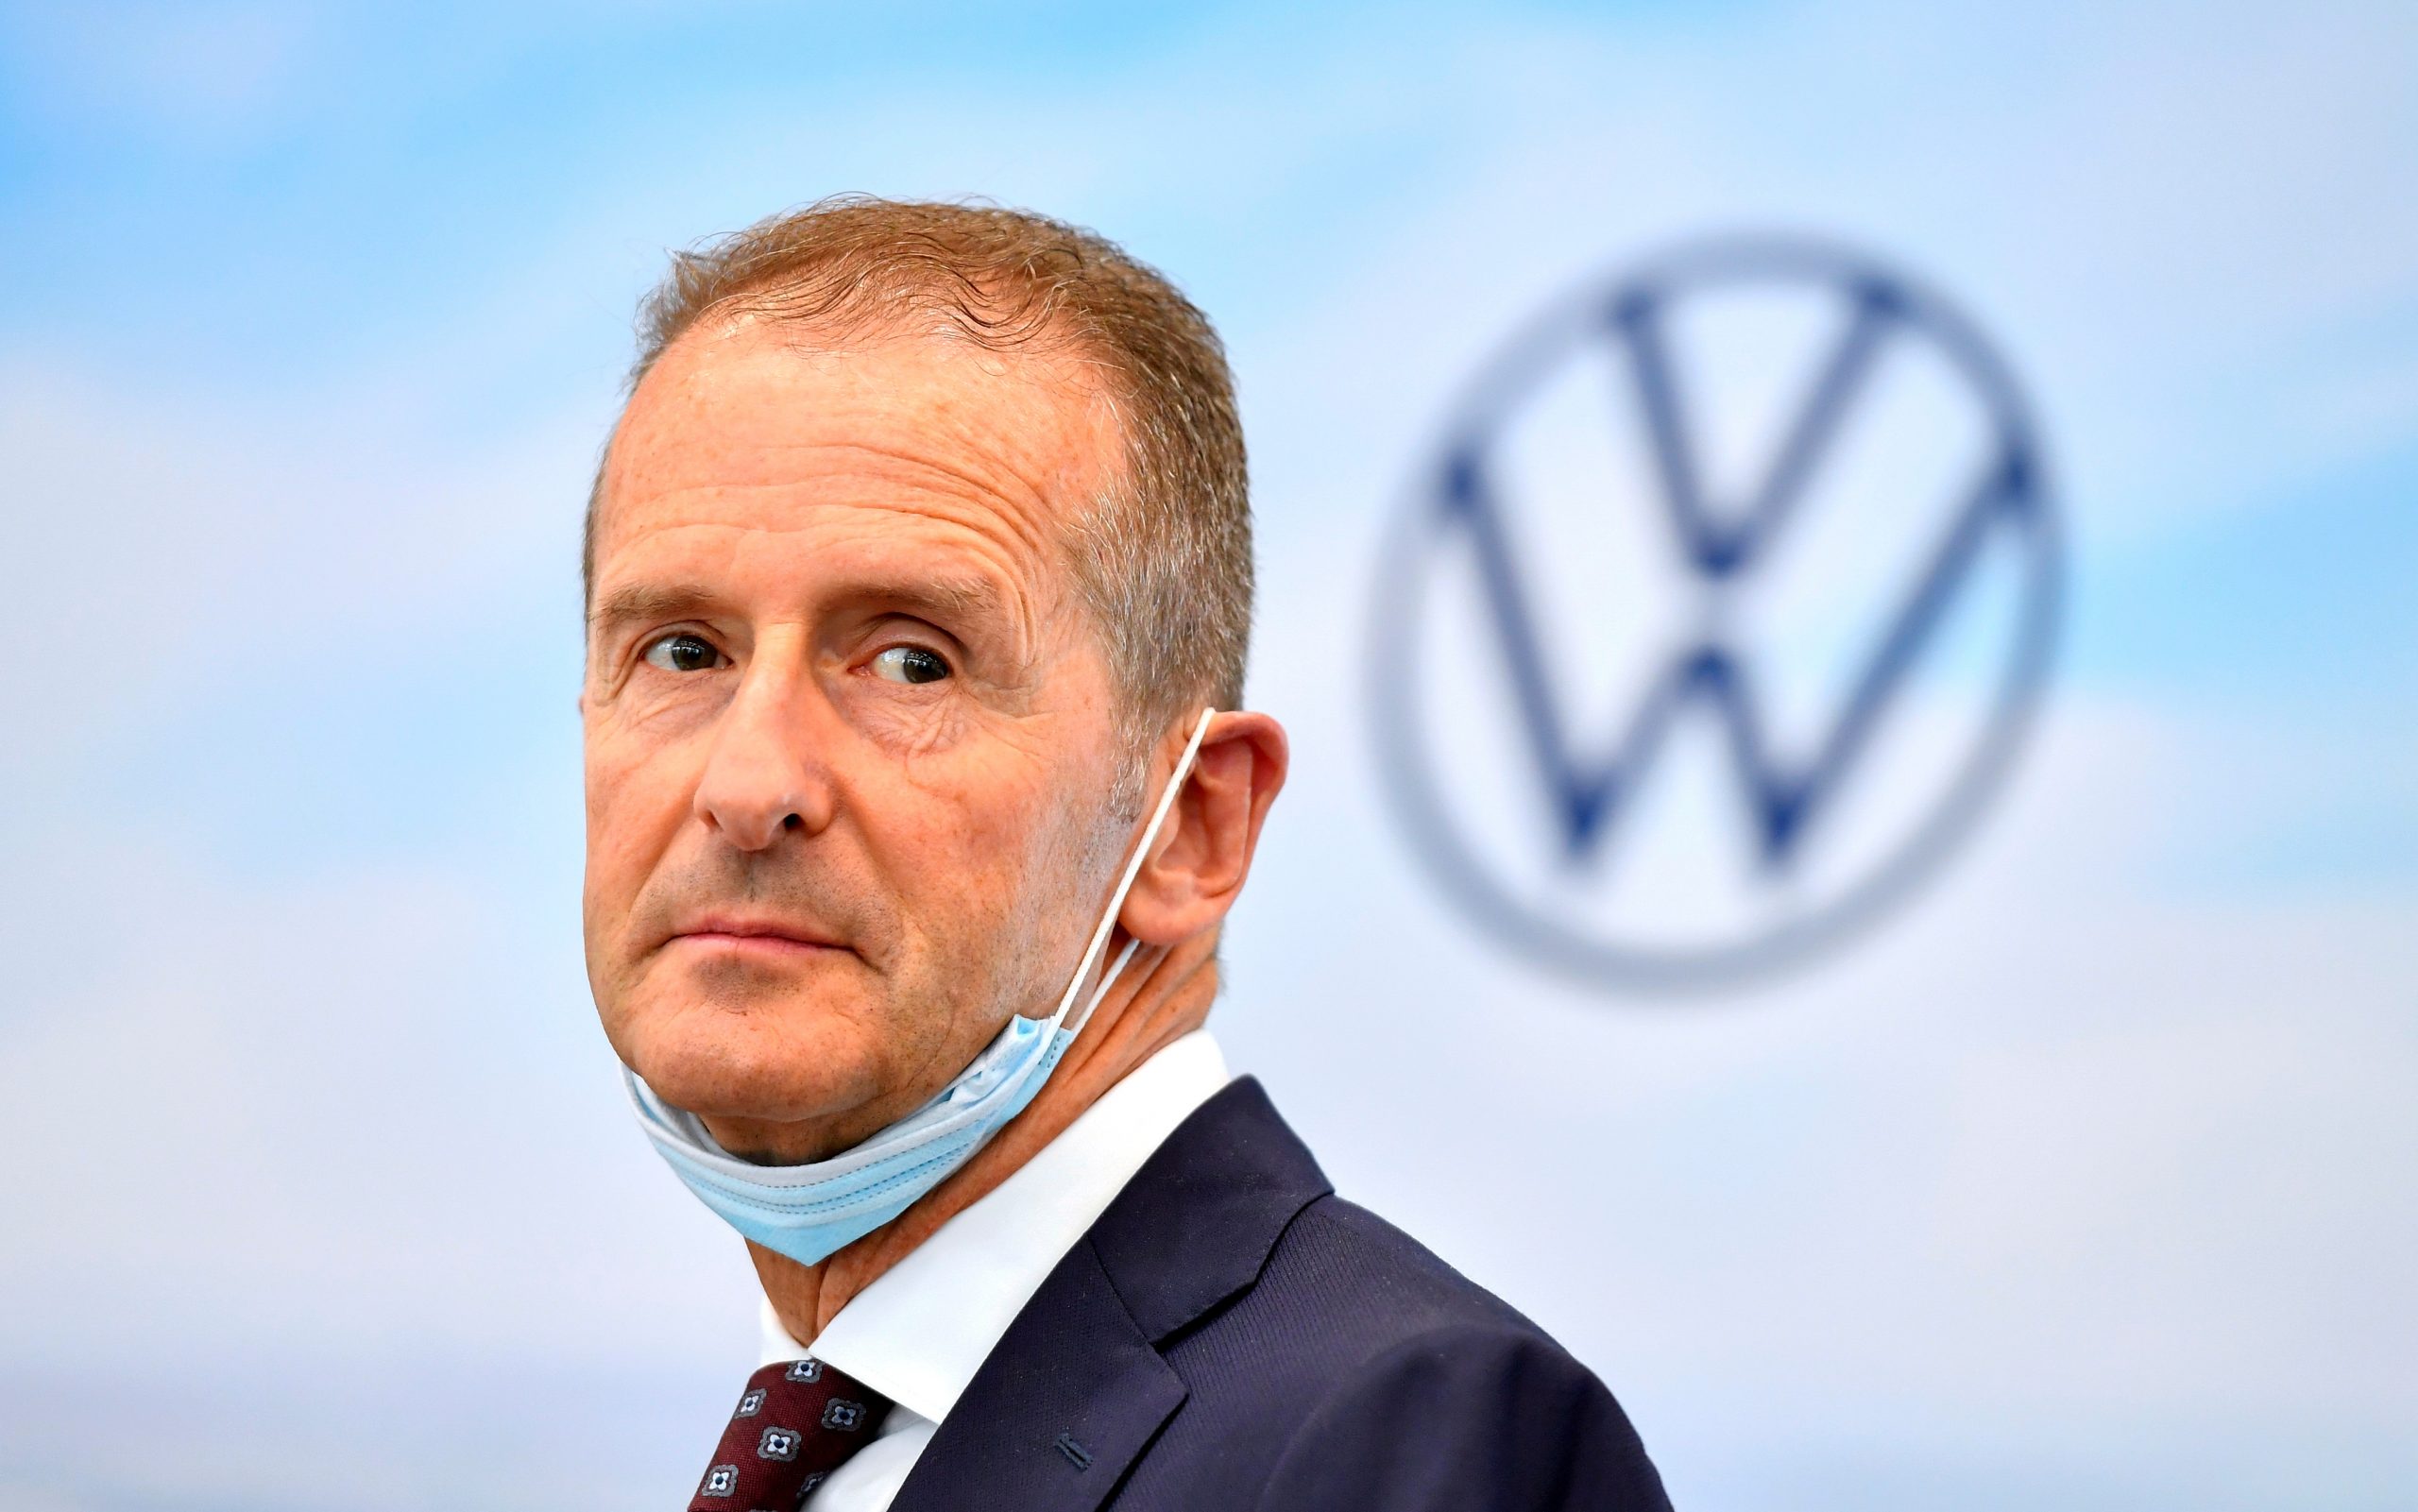 Herbet Diess - Volkswagen CEO